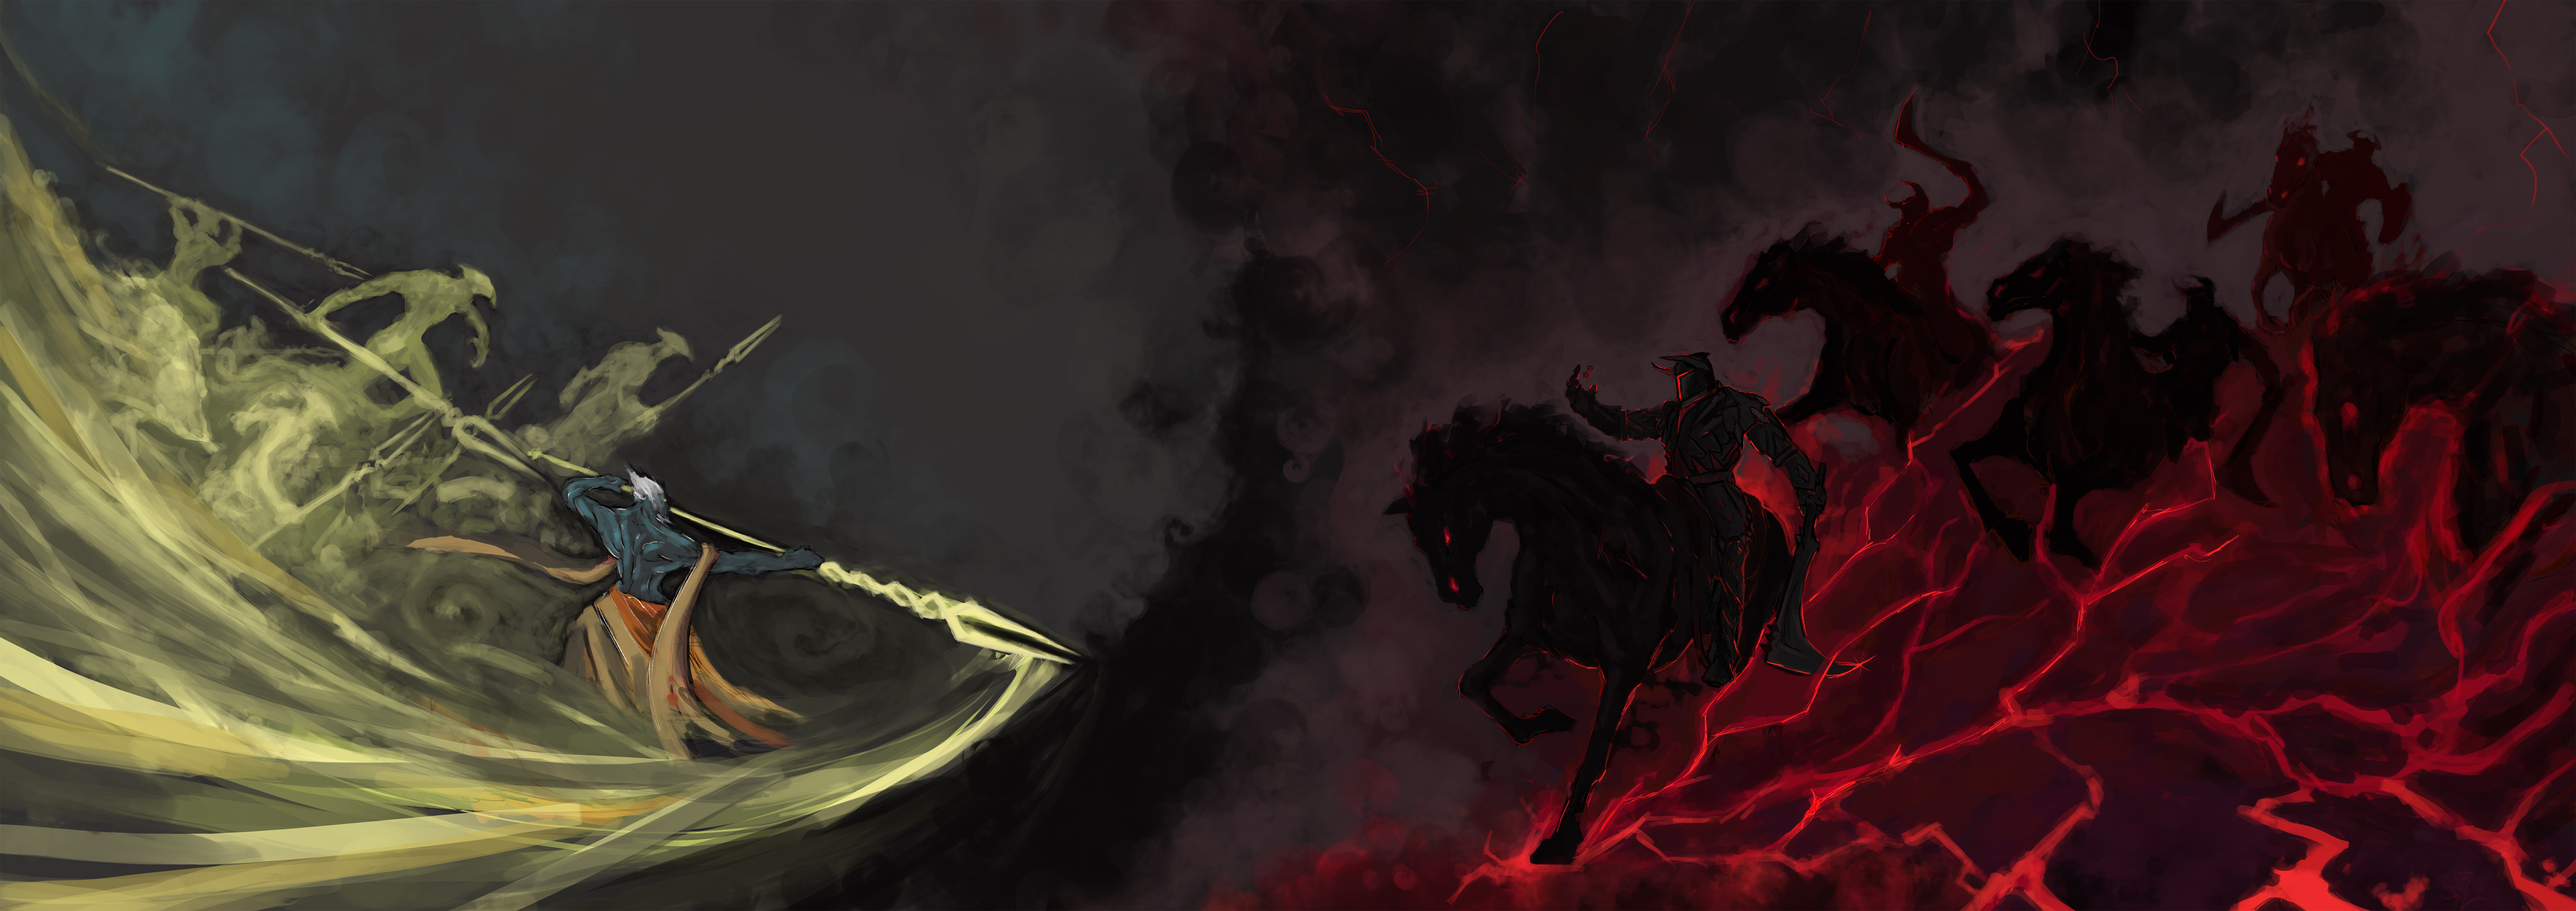 fond d'écran para 2 moniteurs,oeuvre de cg,démon,cheval,ténèbres,illustration